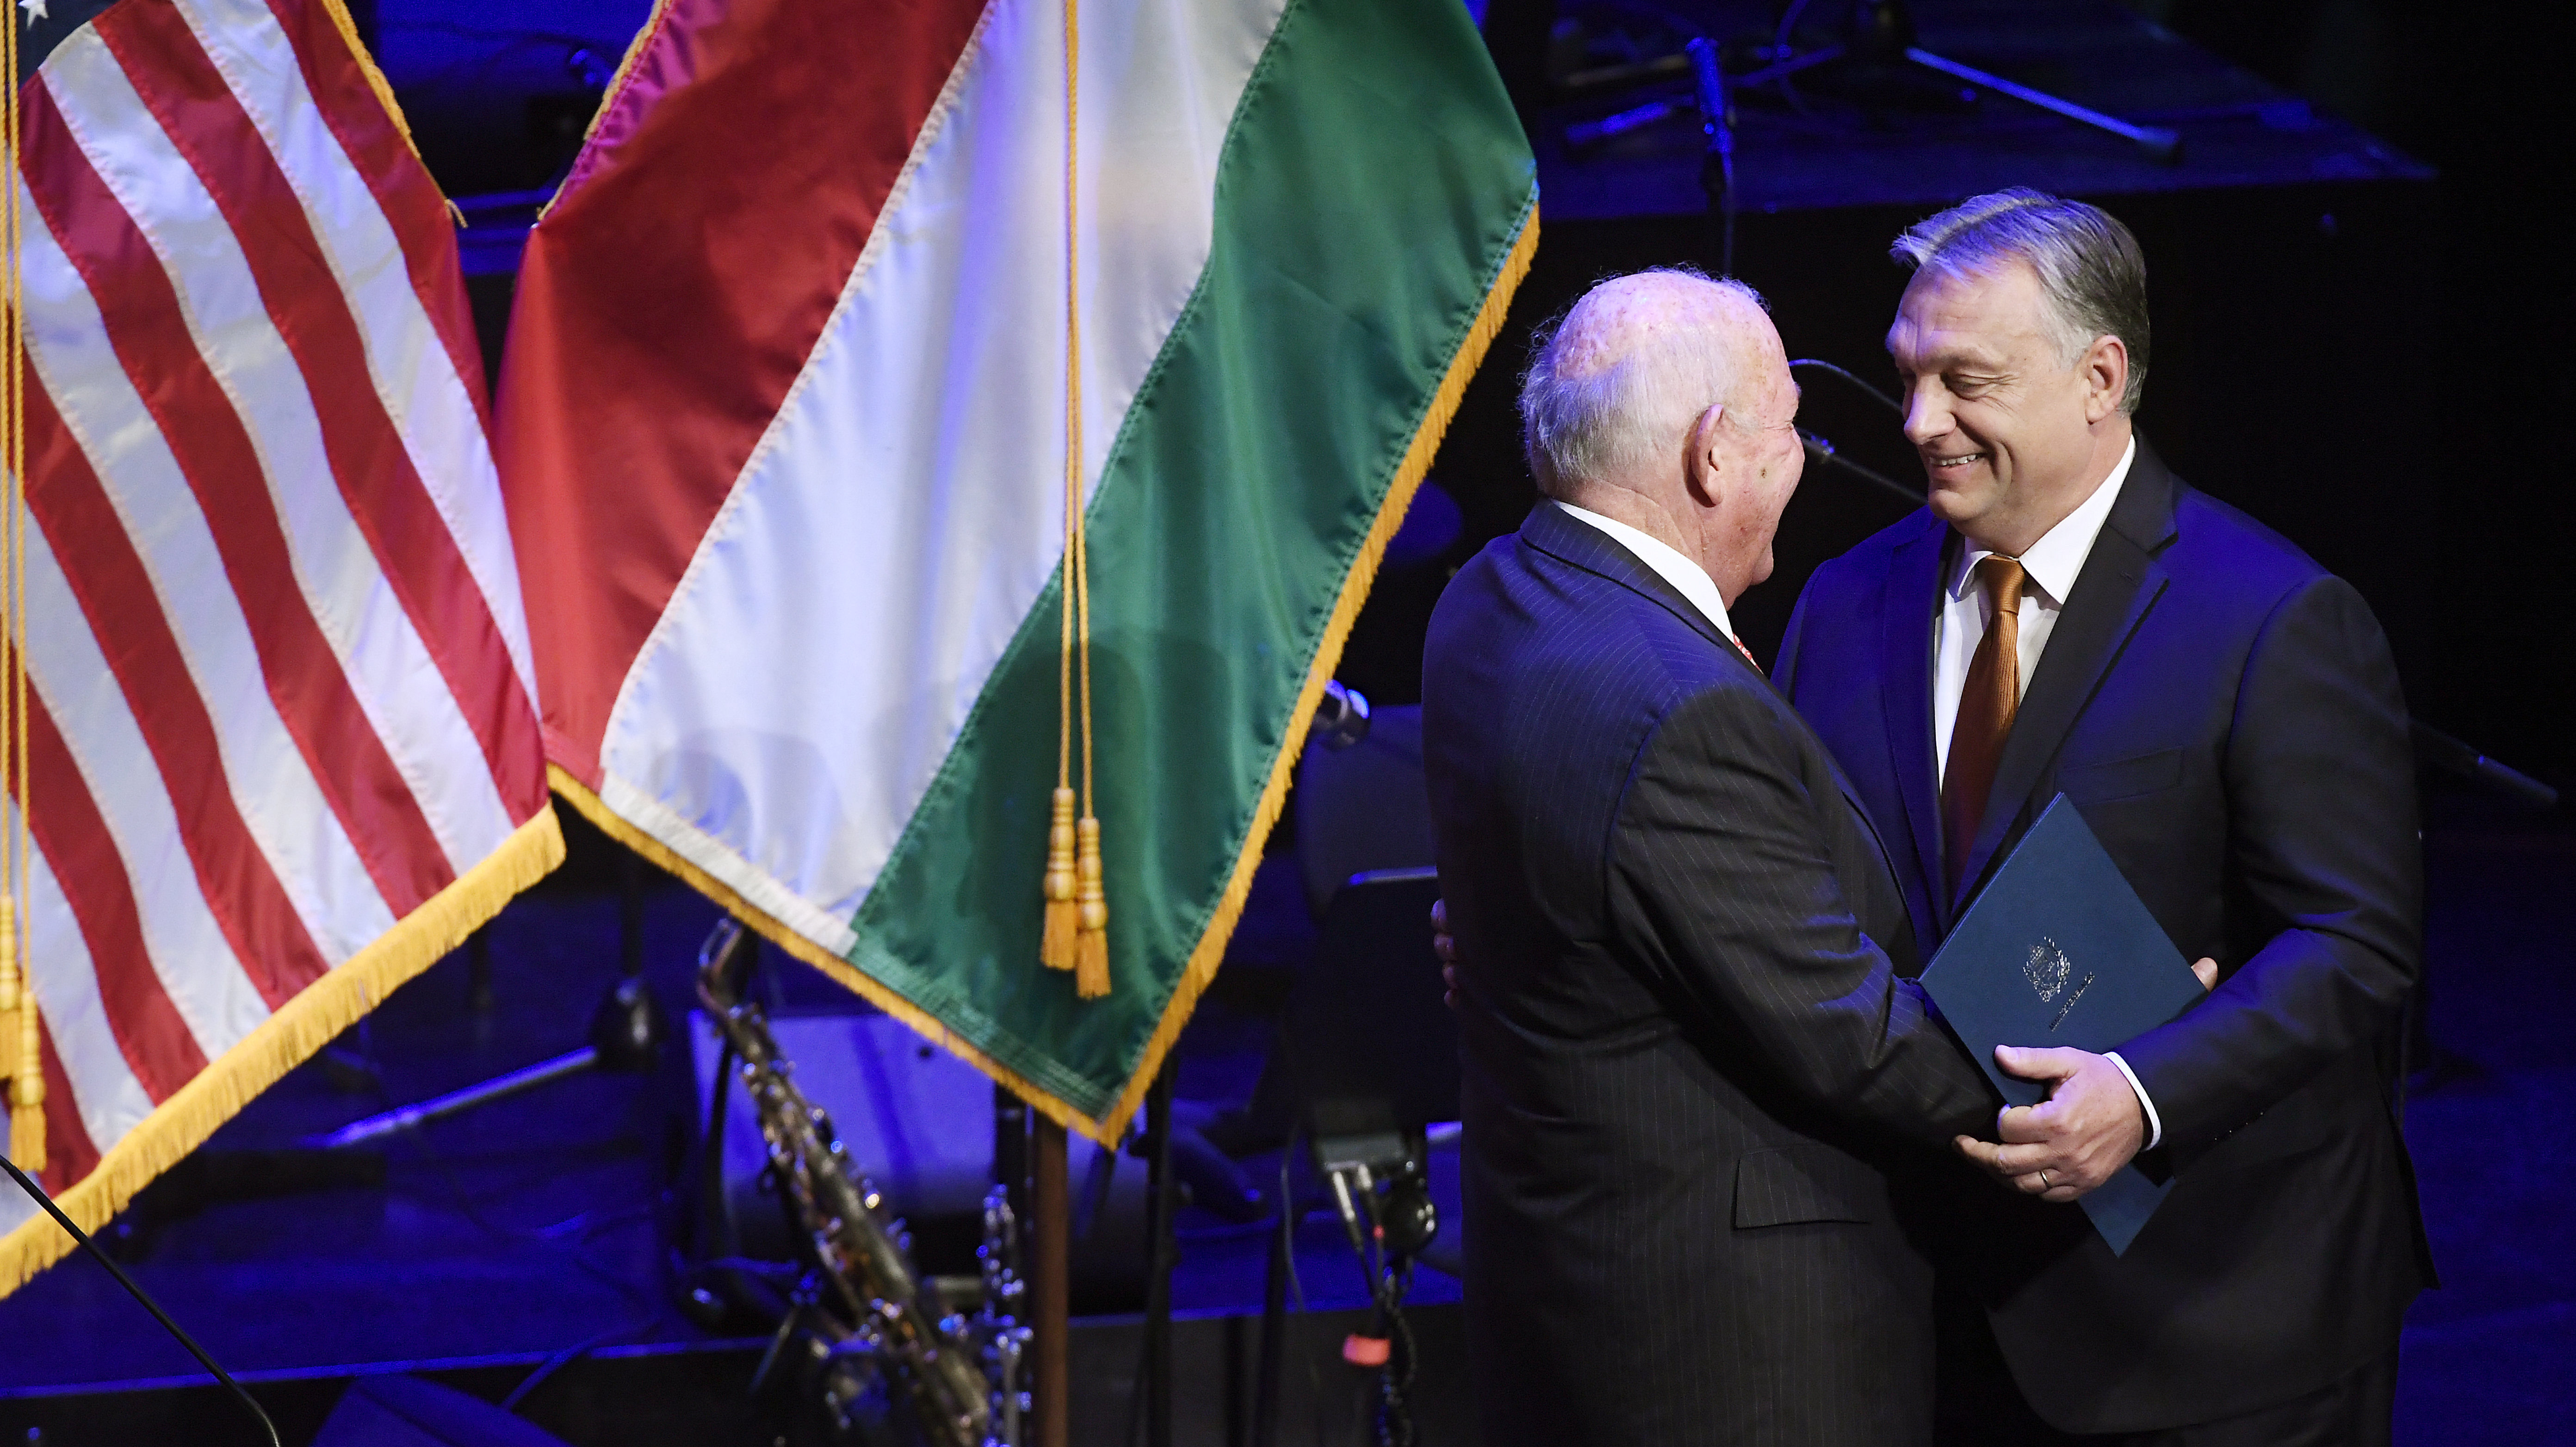 A távozó amerikai nagykövet szerint nincs baj az illiberális demokráciával, mert sokan szavaztak a Fideszre